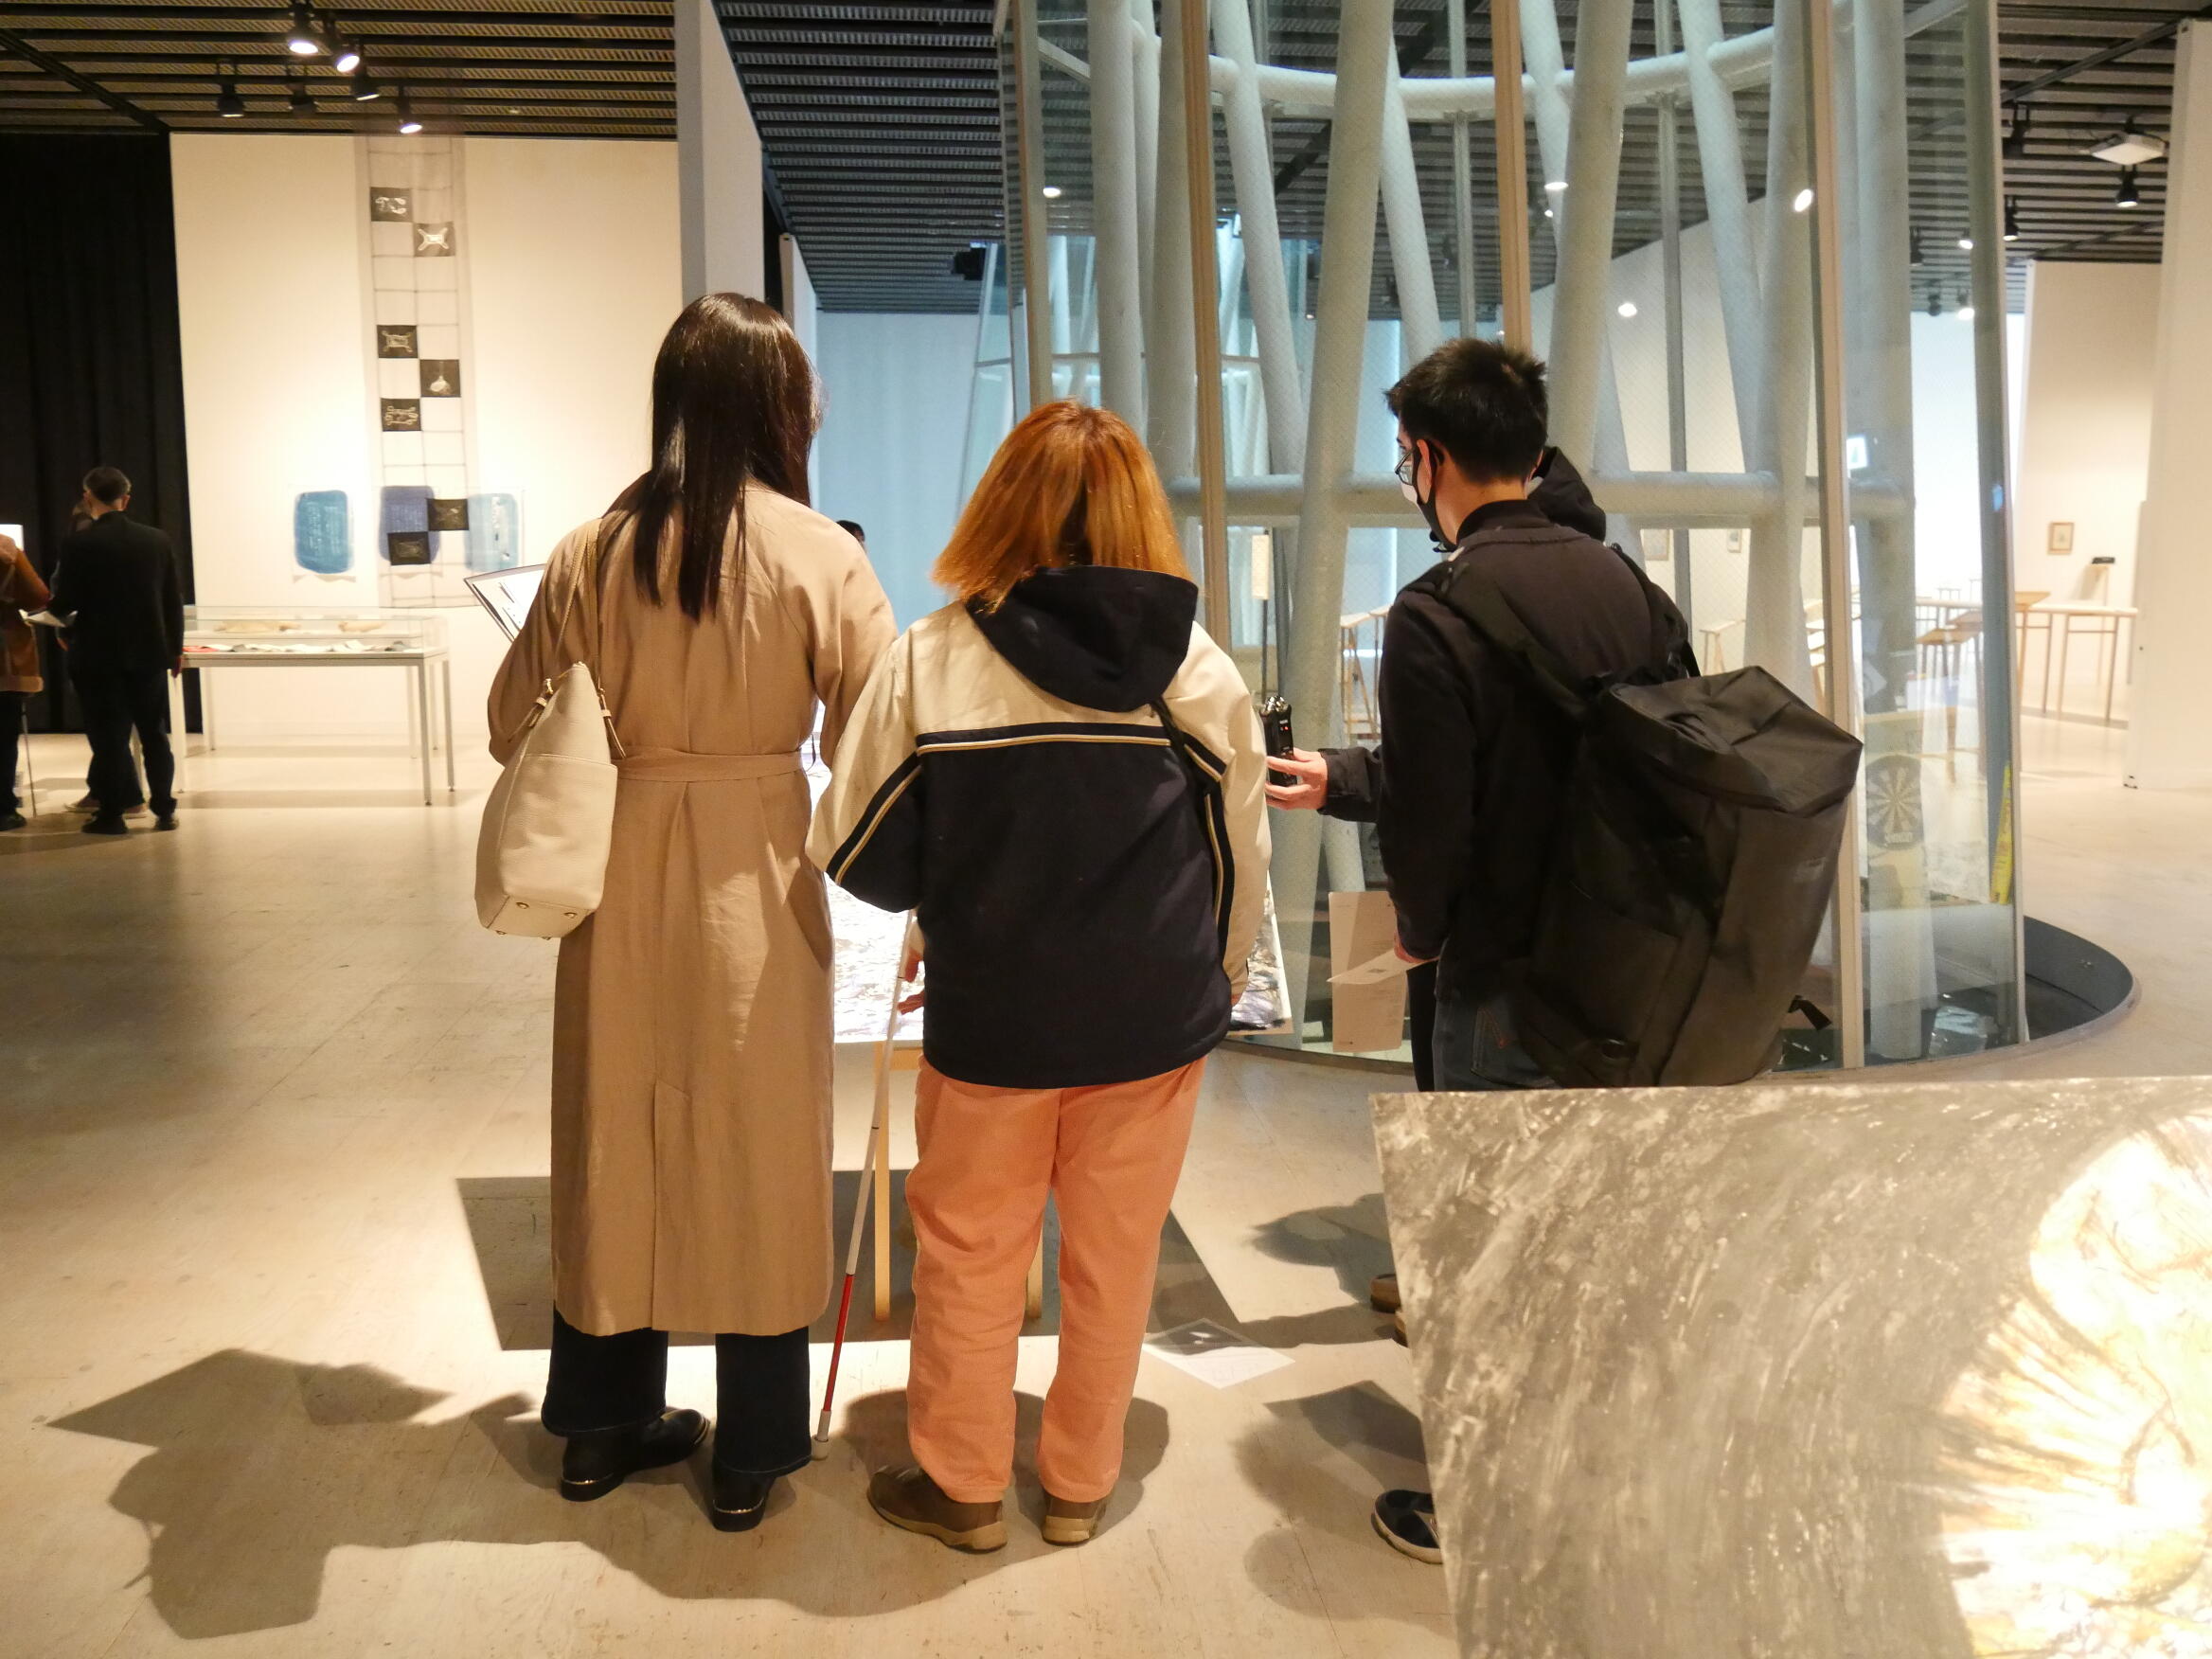 菊池聡太朗さんの作品を鑑賞している様子。白杖を持った見えない学生一人と見える学生3人が荒れ地を描いたドローイングの前に立って会話をしている